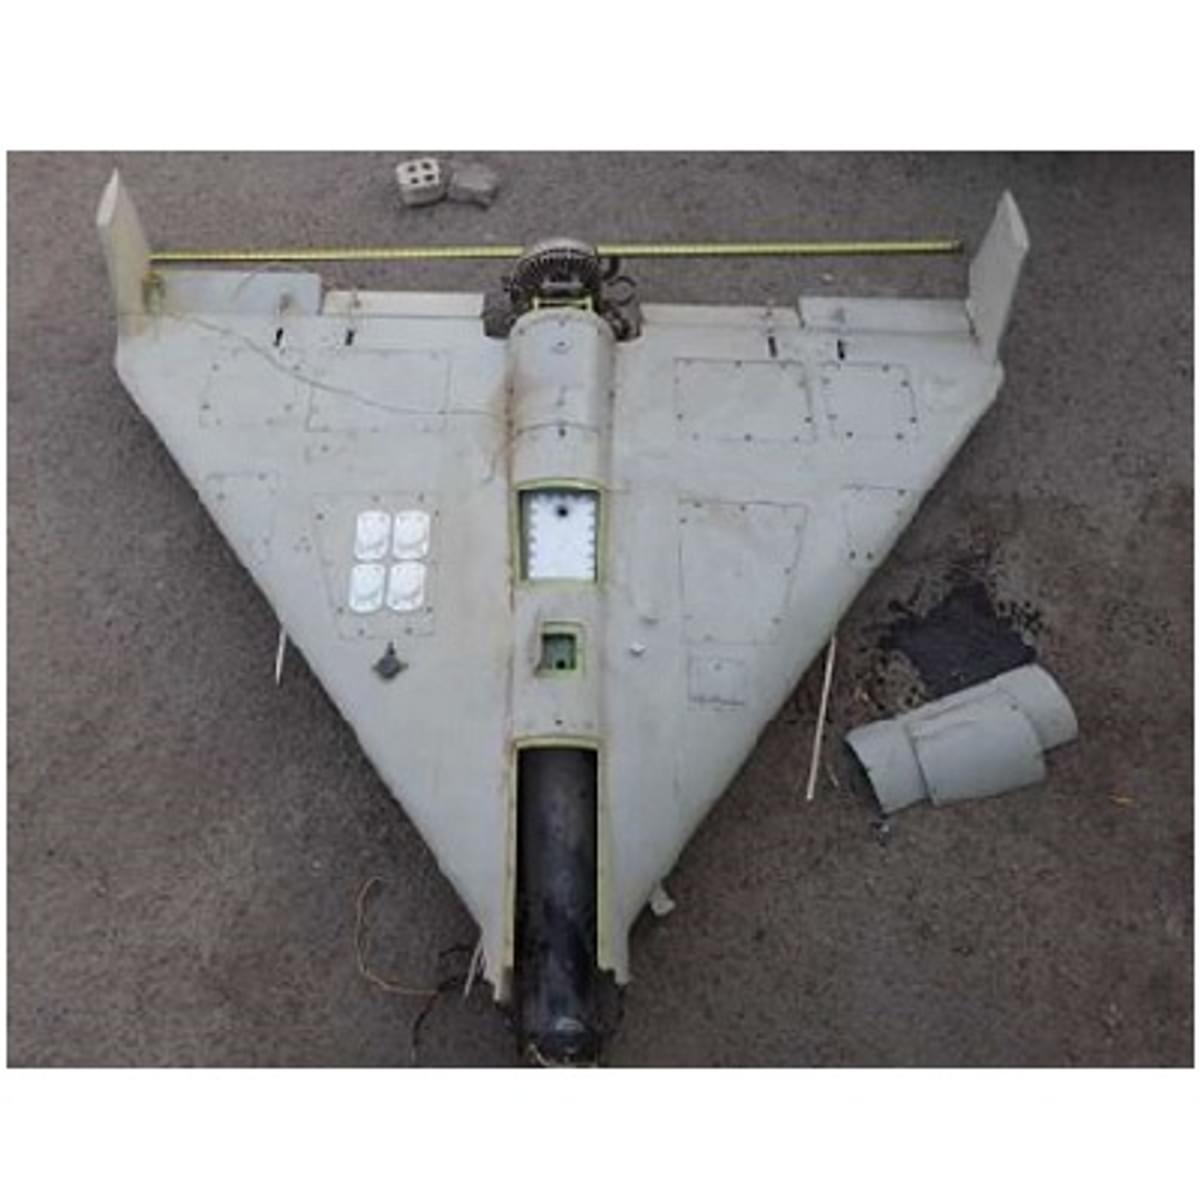 Iraanse kamikaze drones zijn tjokvol met Westerse technologie image